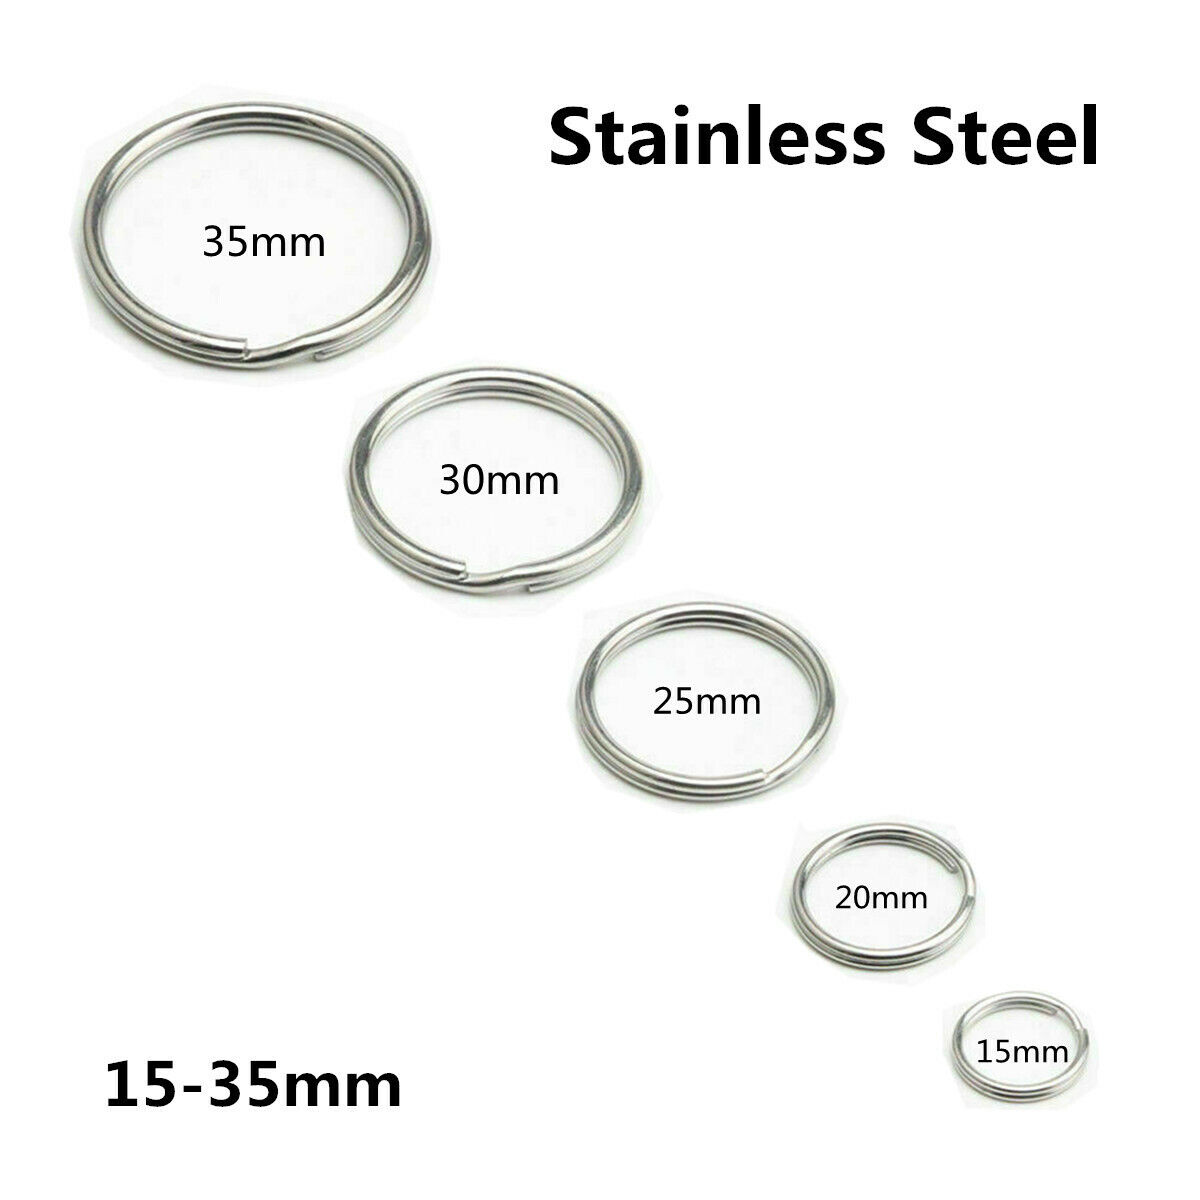 10-100 Stainless Steel Key Rings Split Round Wire Keychain Jump Ring Metal Loop